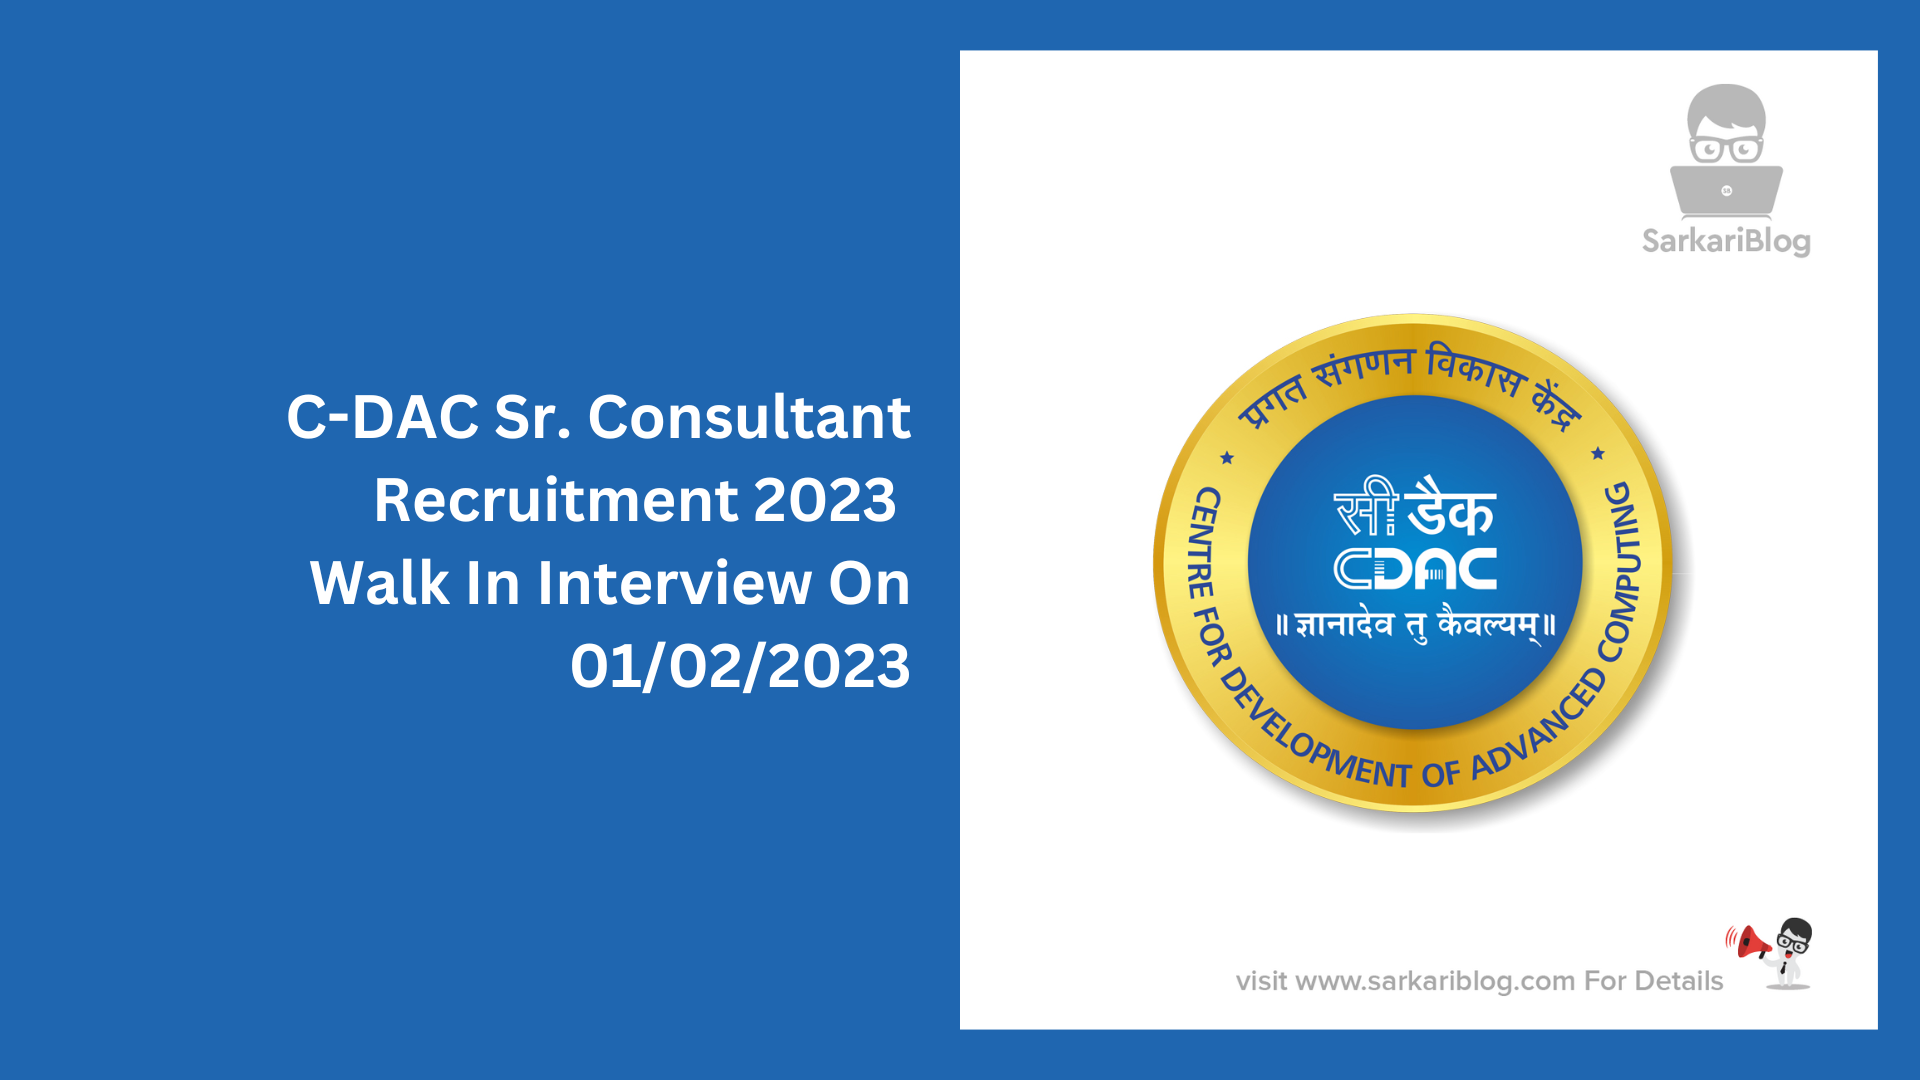 C-DAC Sr. Consultant Recruitment 2023